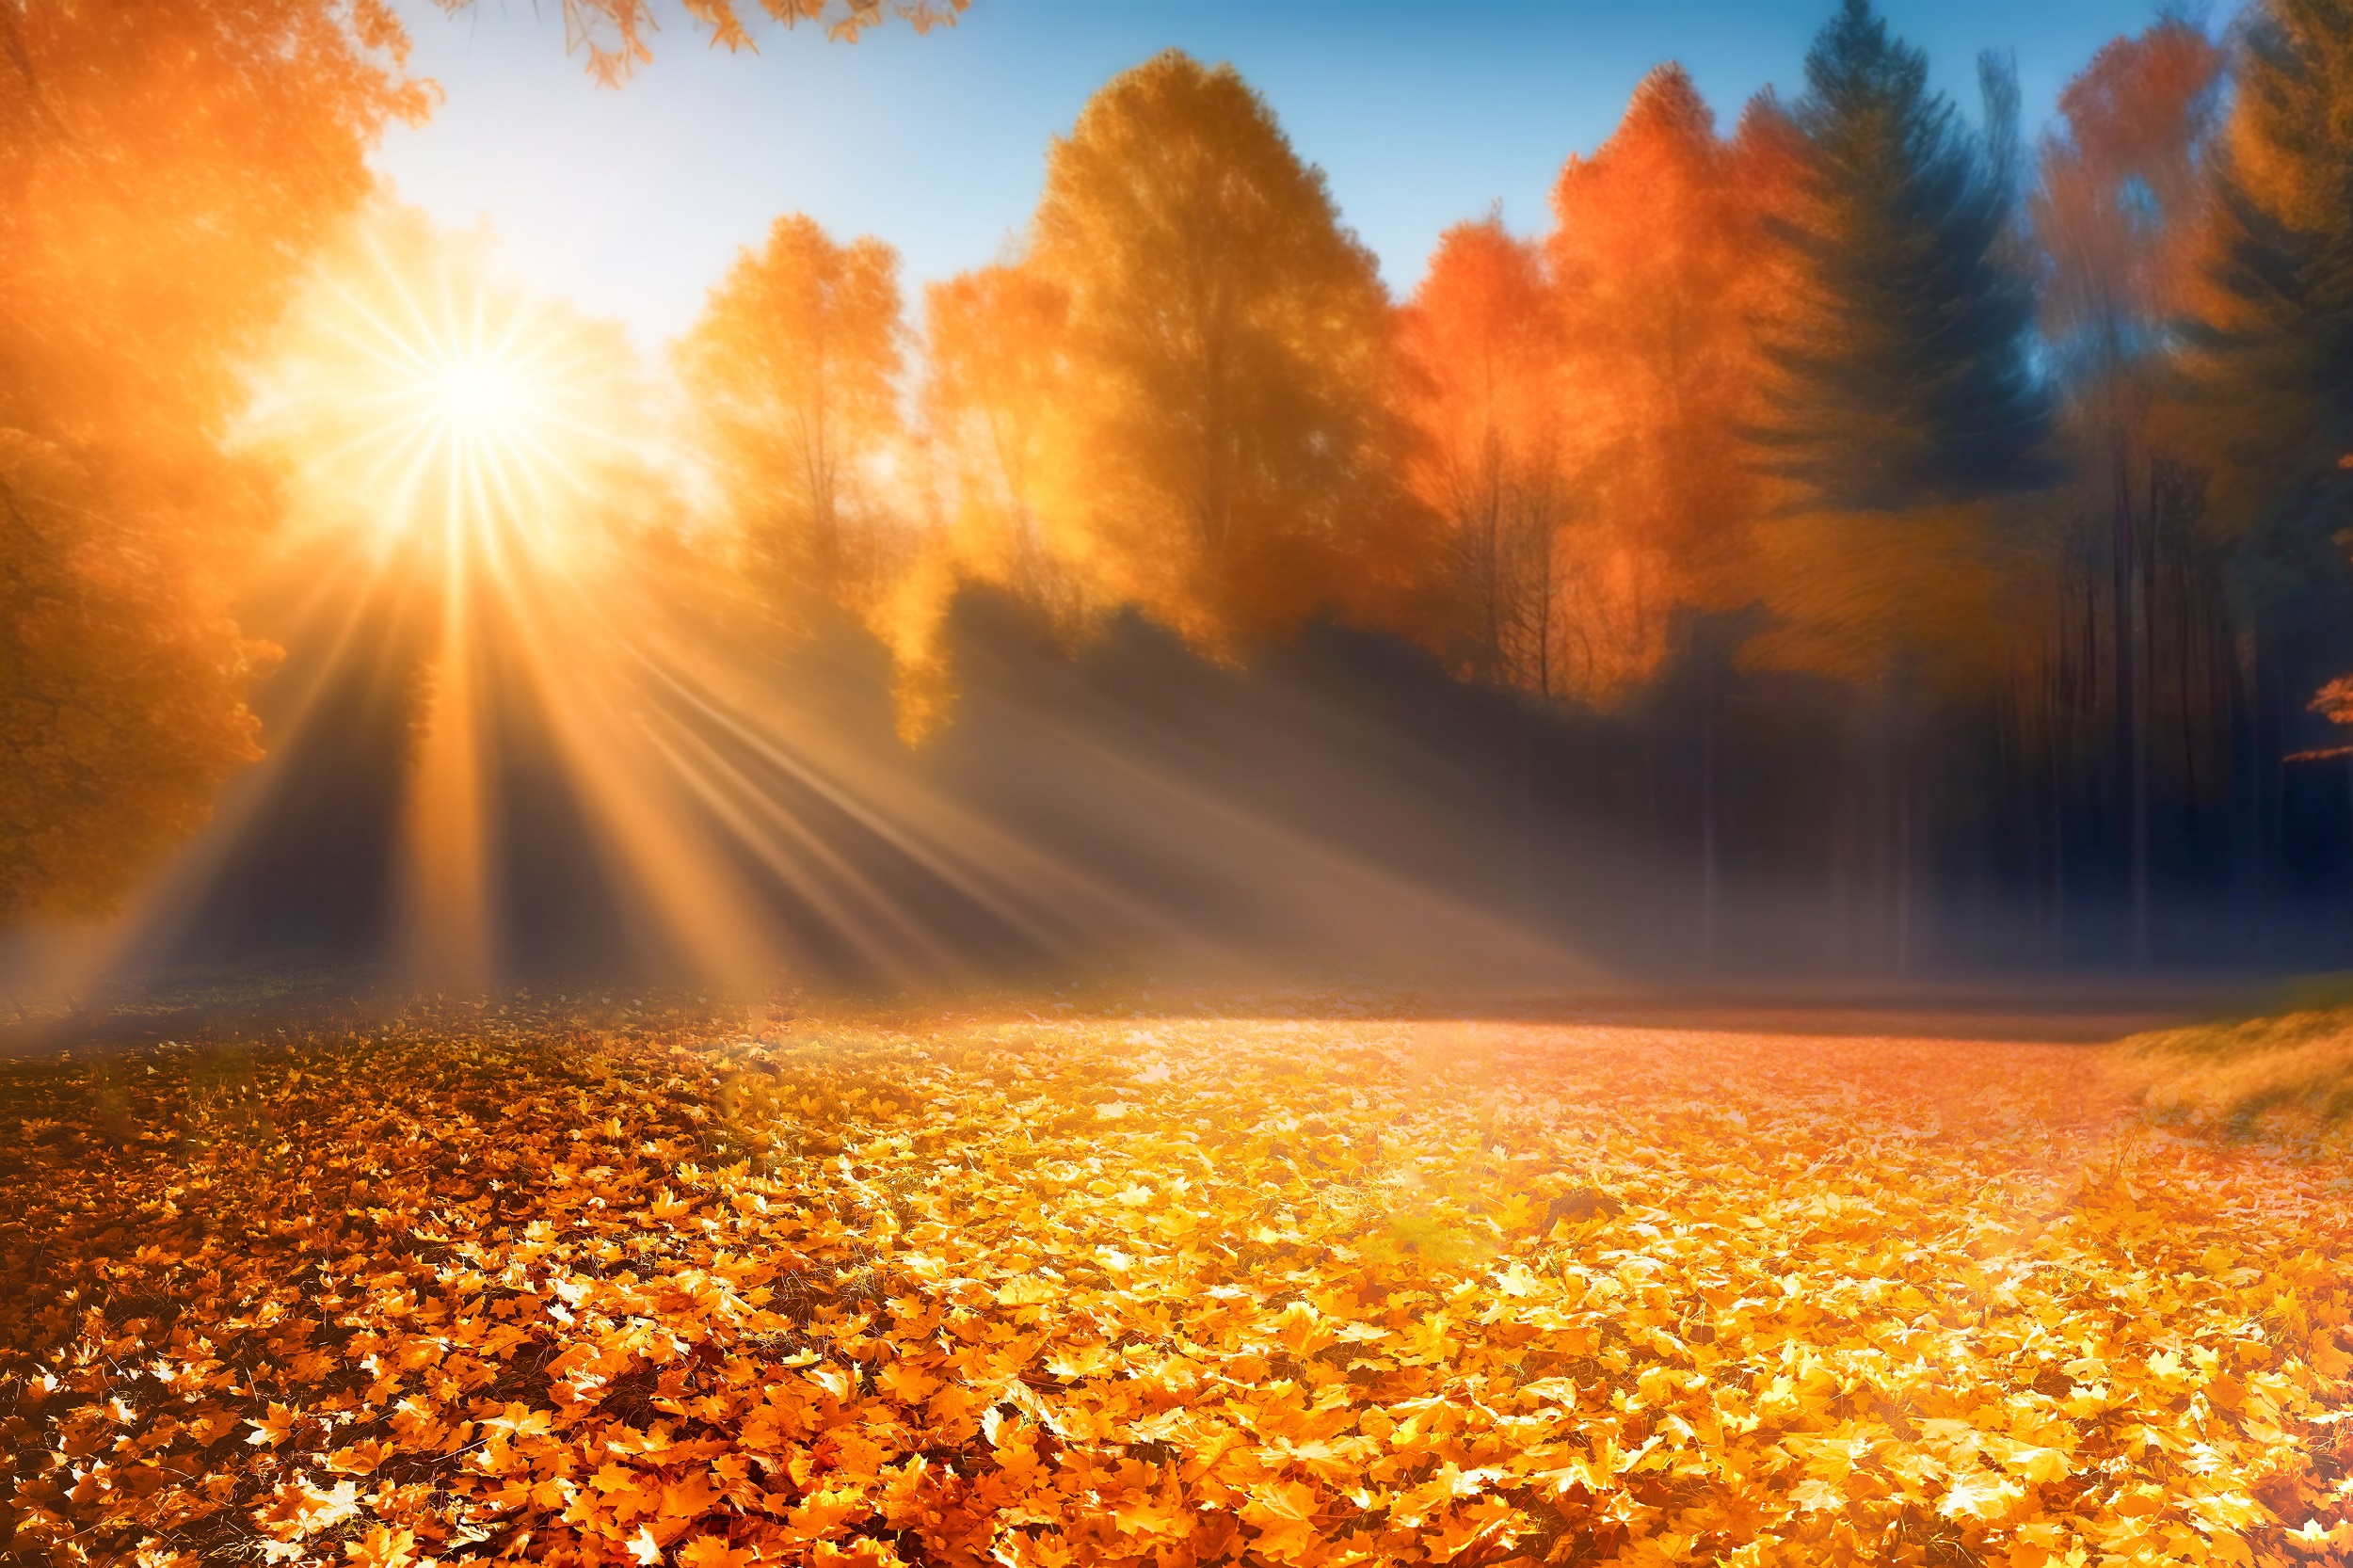 La chaleur record d'automne a probablement été causée par des phénomènes météo naturels, et accentuée par le réchauffement climatique. © Laura Pashkevich, Adobe Stock